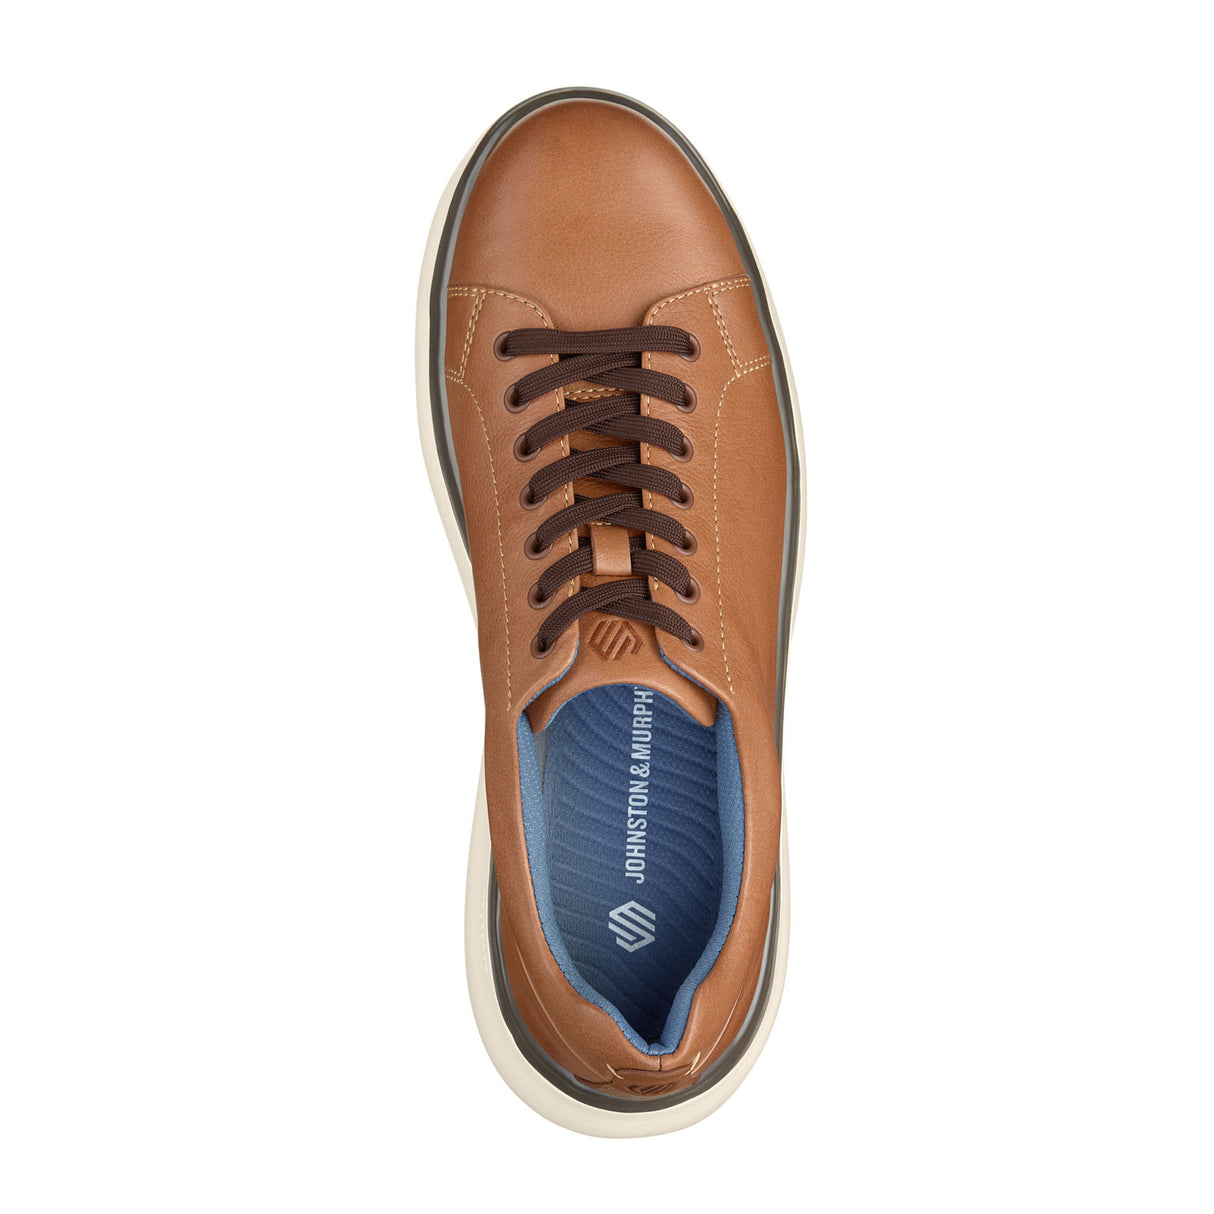 Johnston & Murphy Oasis LTT Sneaker (Men) - Tan Full Grain Athletic - Casual - Lace Up - The Heel Shoe Fitters